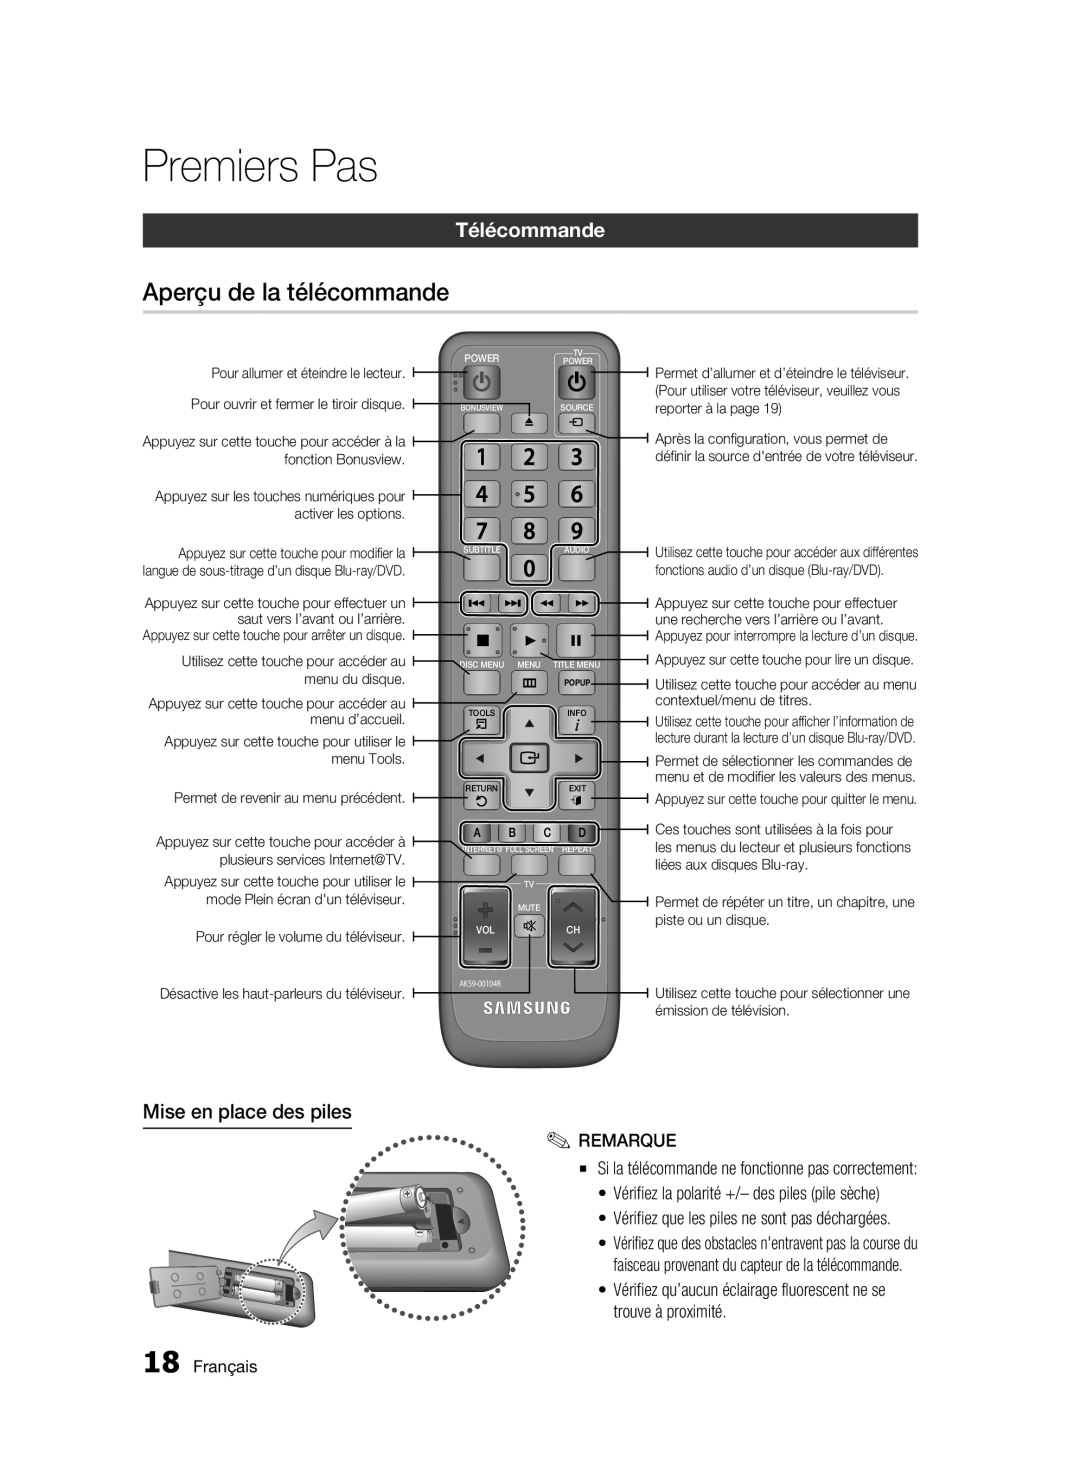 Samsung BD-C6300 user manual Aperçu de la télécommande, Télécommande, Mise en place des piles, Premiers Pas, Français 